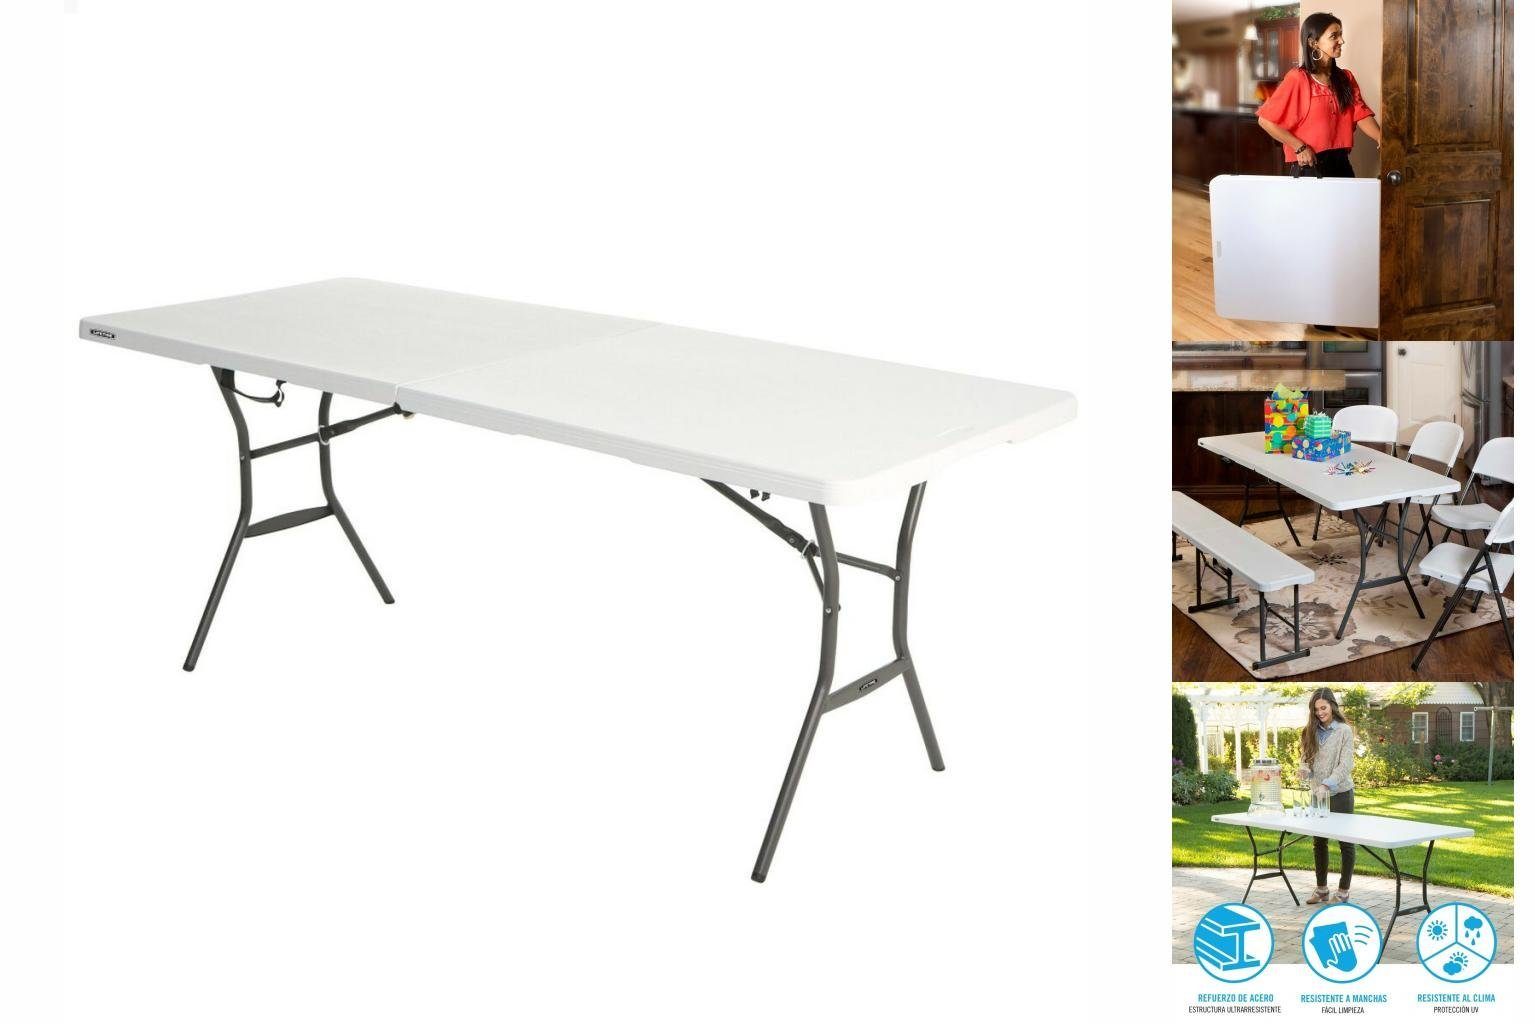 Lifetime Gartentisch Gartentisch Table Klapptisch Lifetime Weiß 185 x 74 x 76 cm Stahl Kuns